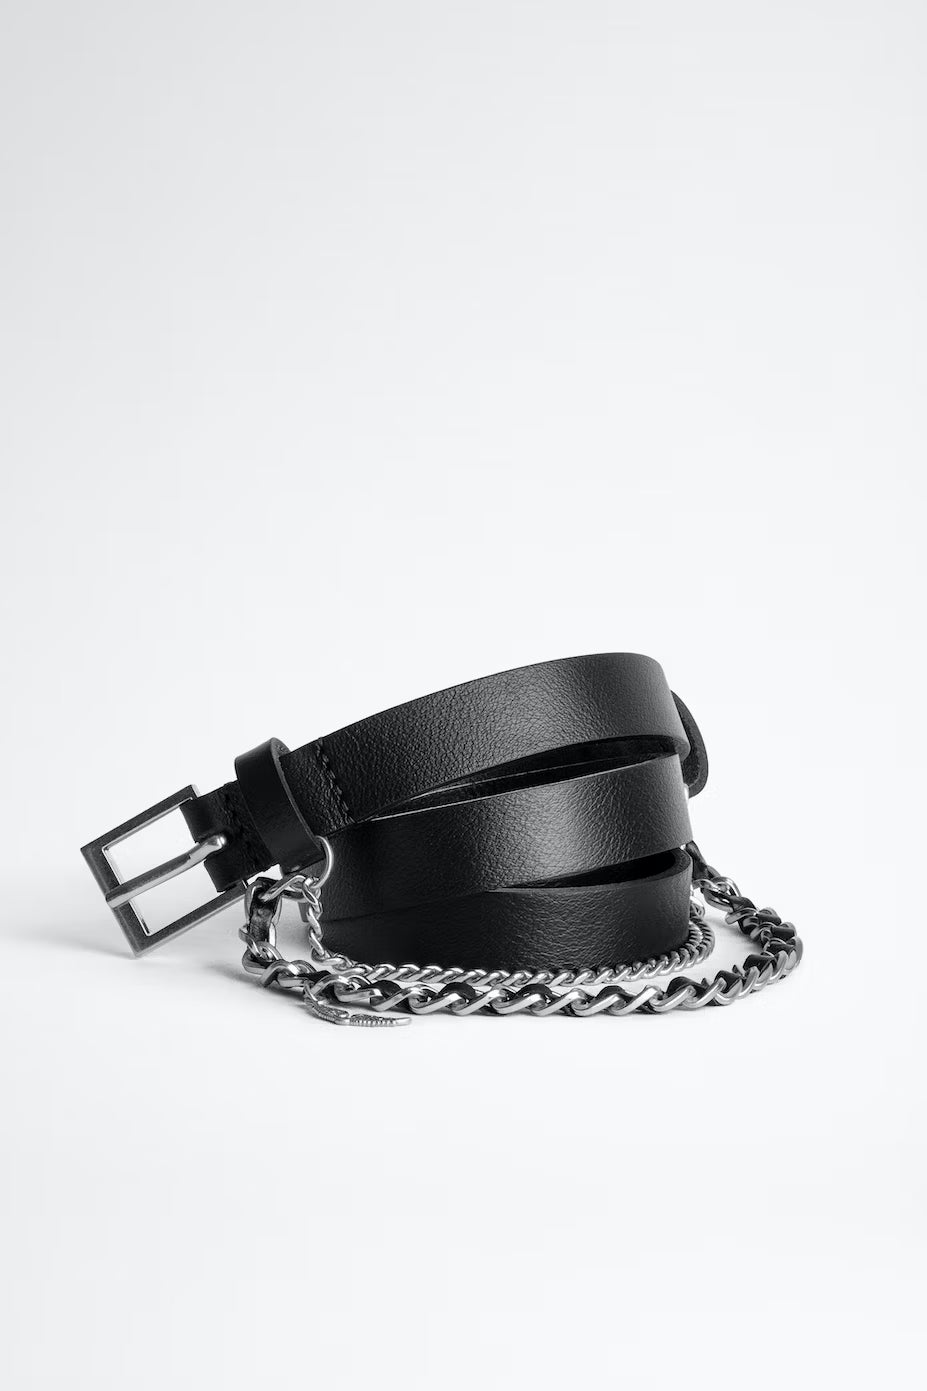 Cinturon Rock Chain Belt